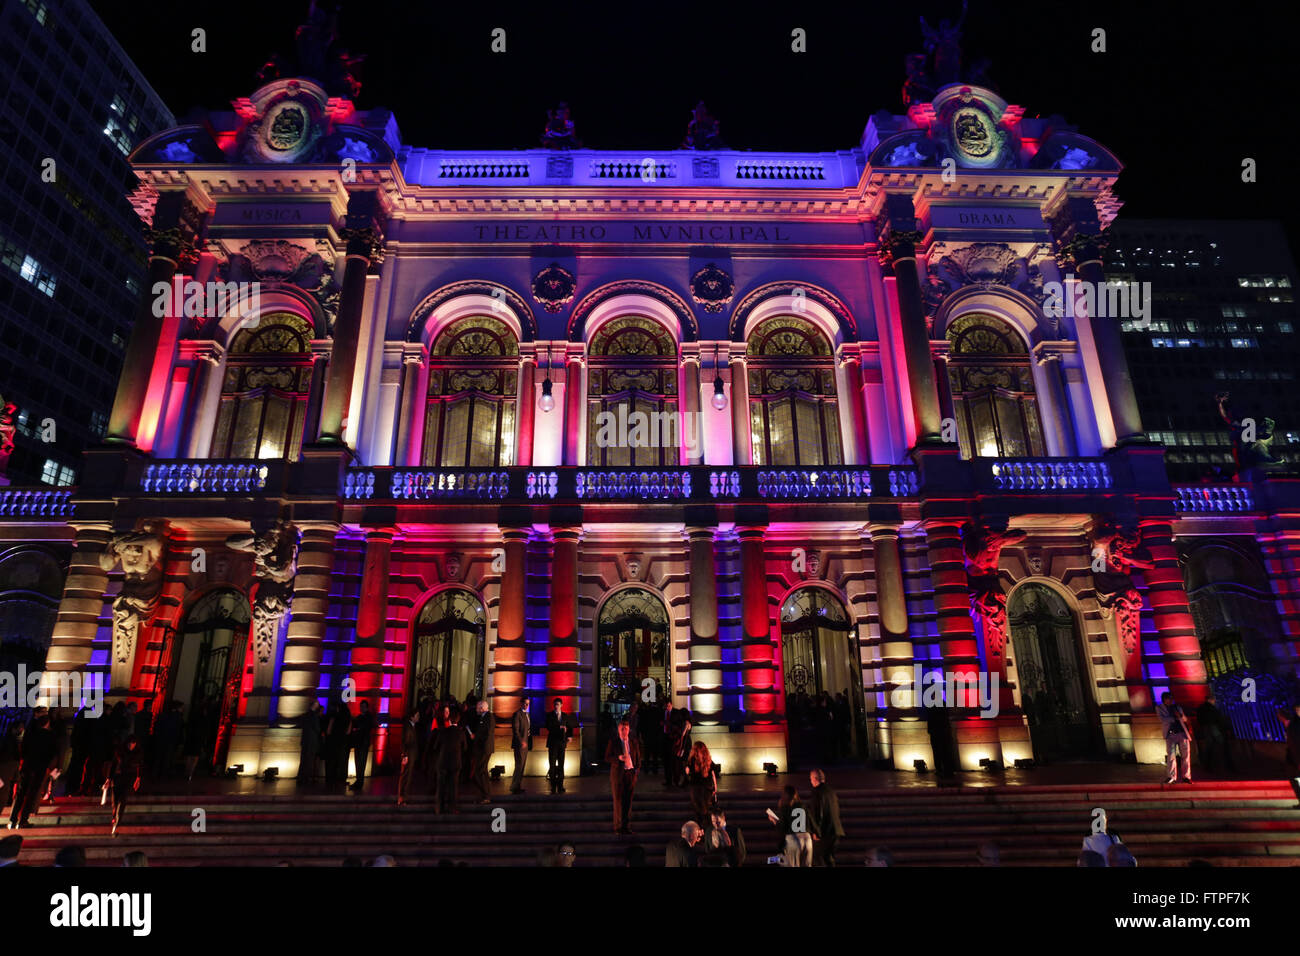 Théâtre Municipal de São Paulo de nuit décorée pour l'événement avec des lumières colorées Banque D'Images